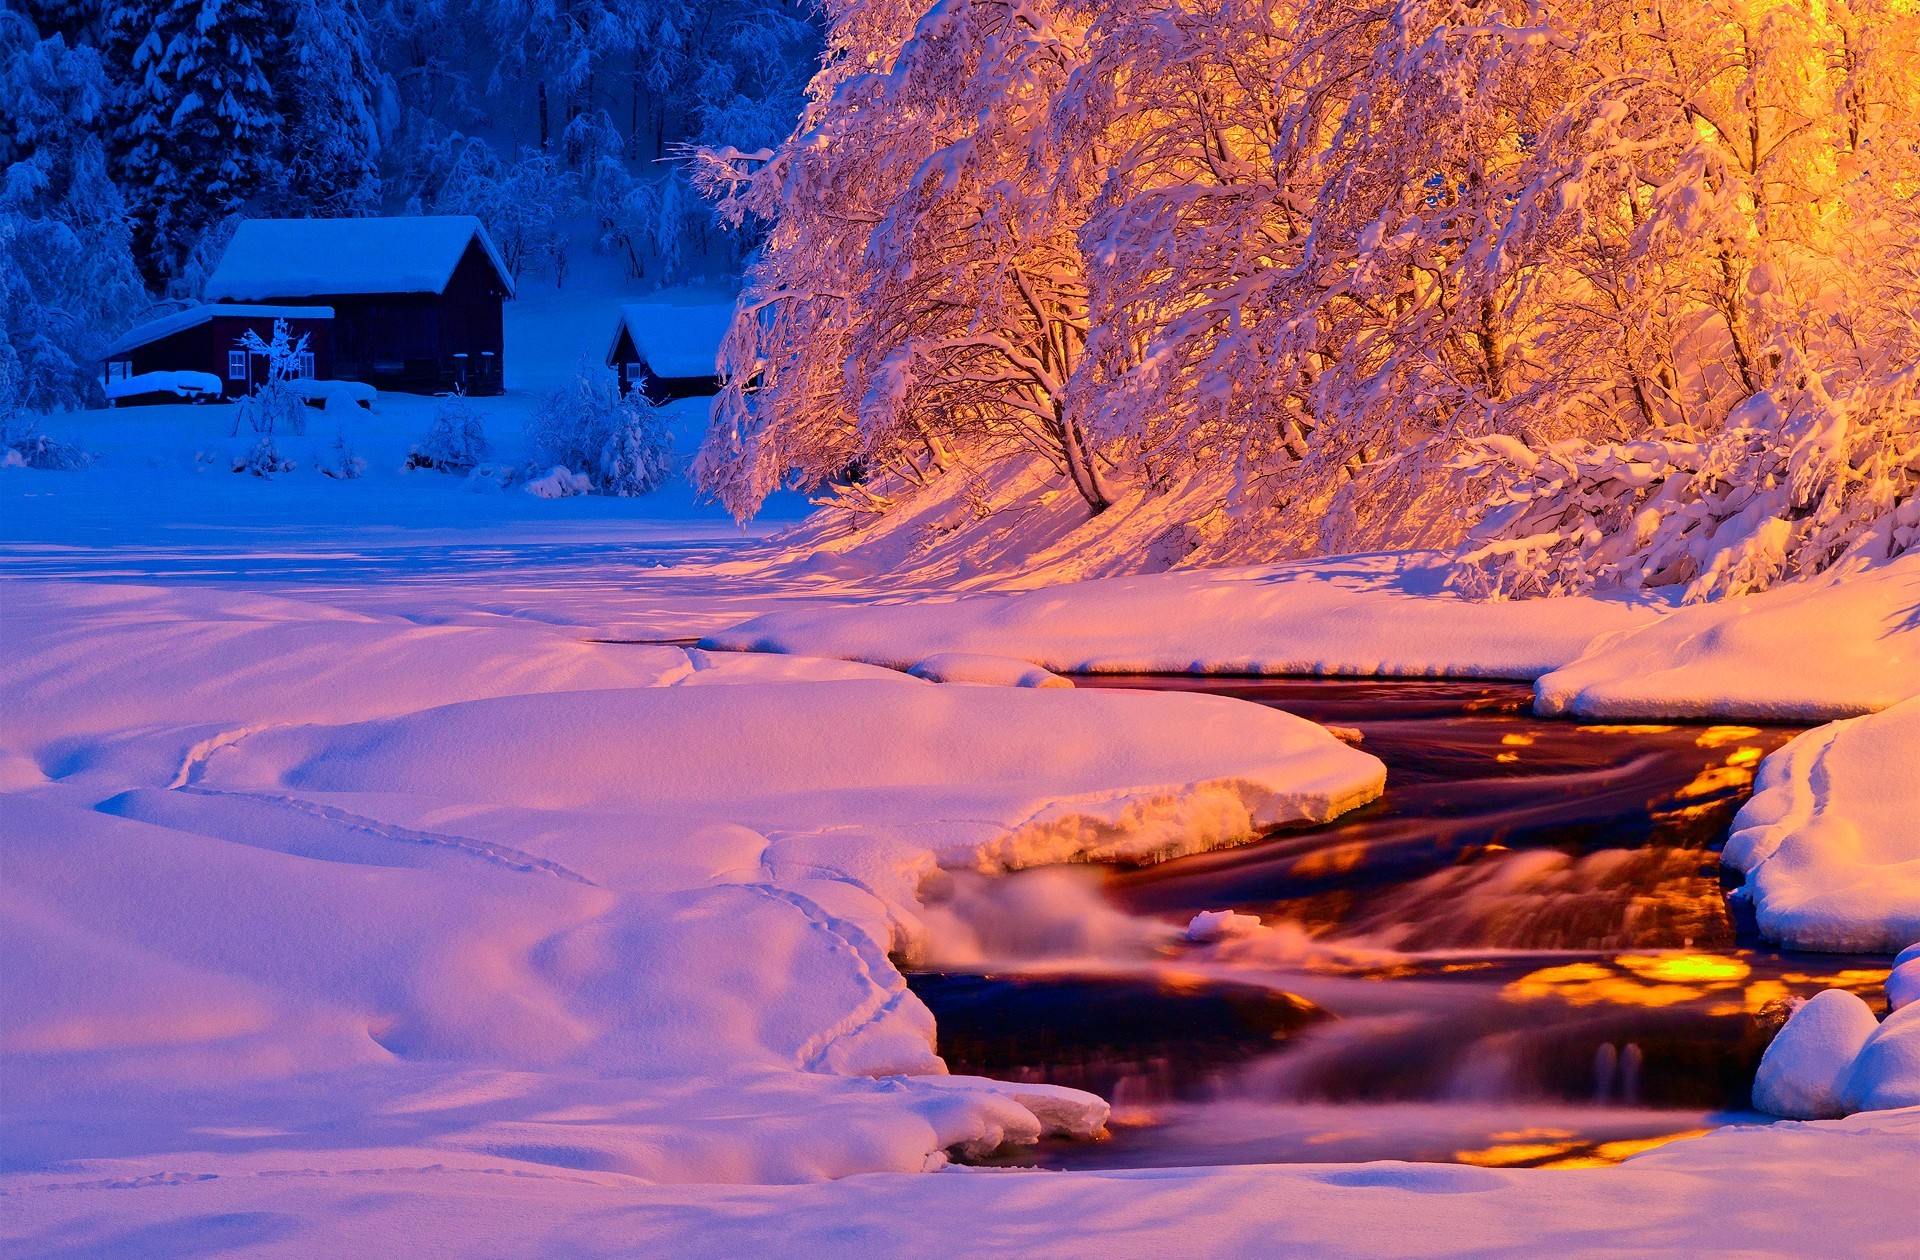 Скачать картинку Зима, Закат, Снег, Солнечный Свет, Фотографии в телефон бесплатно.